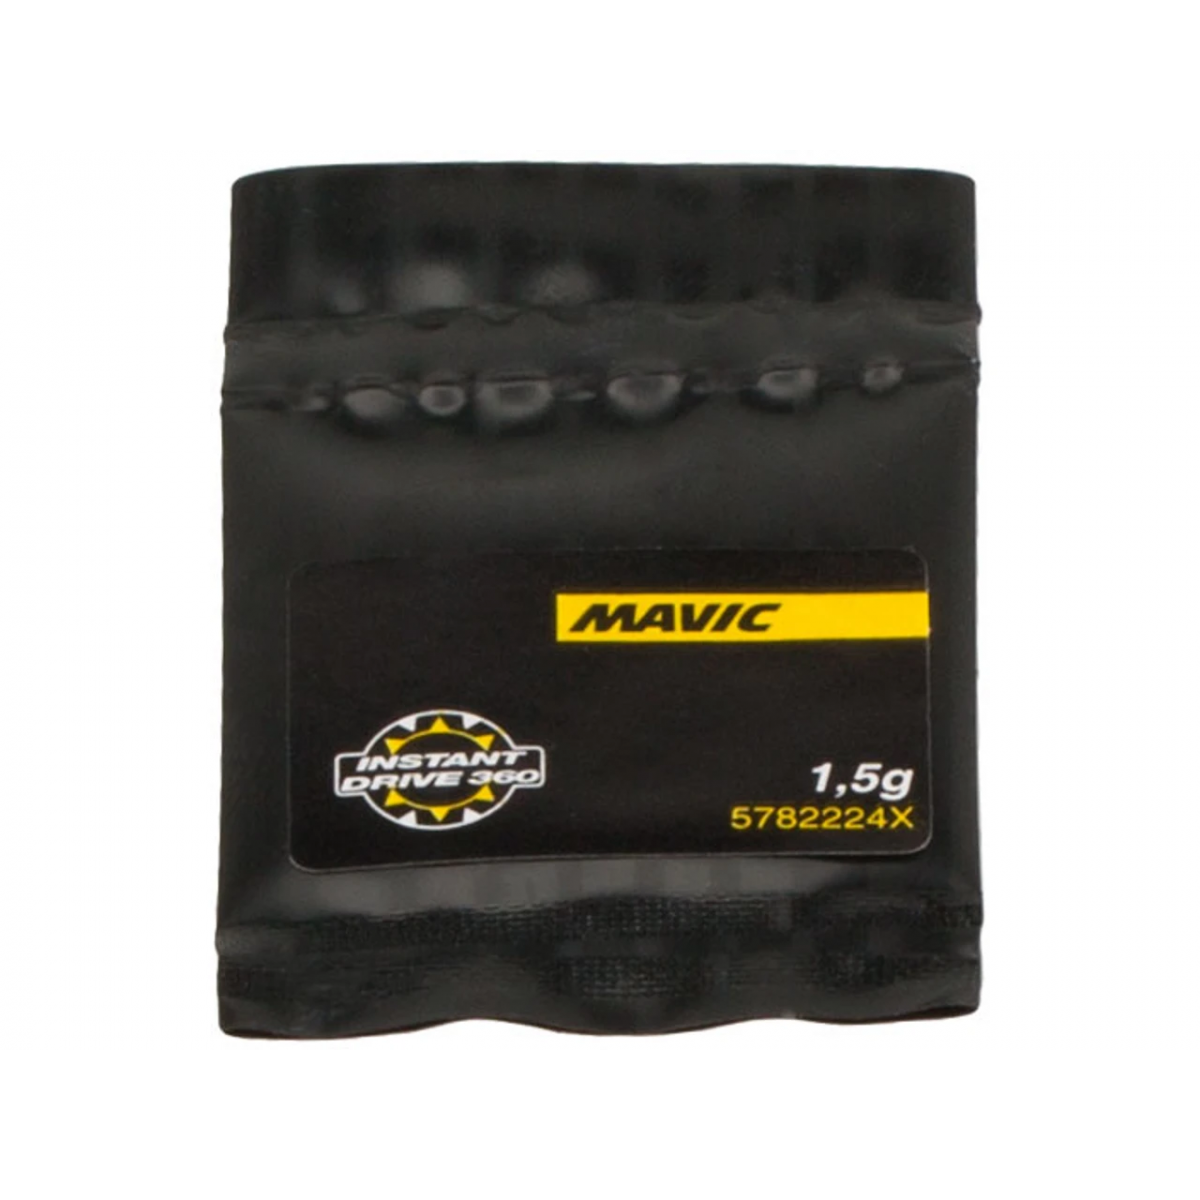 Grasa especial Mavic para núcleo Instant Drive 360 V2251901 | 5782224X